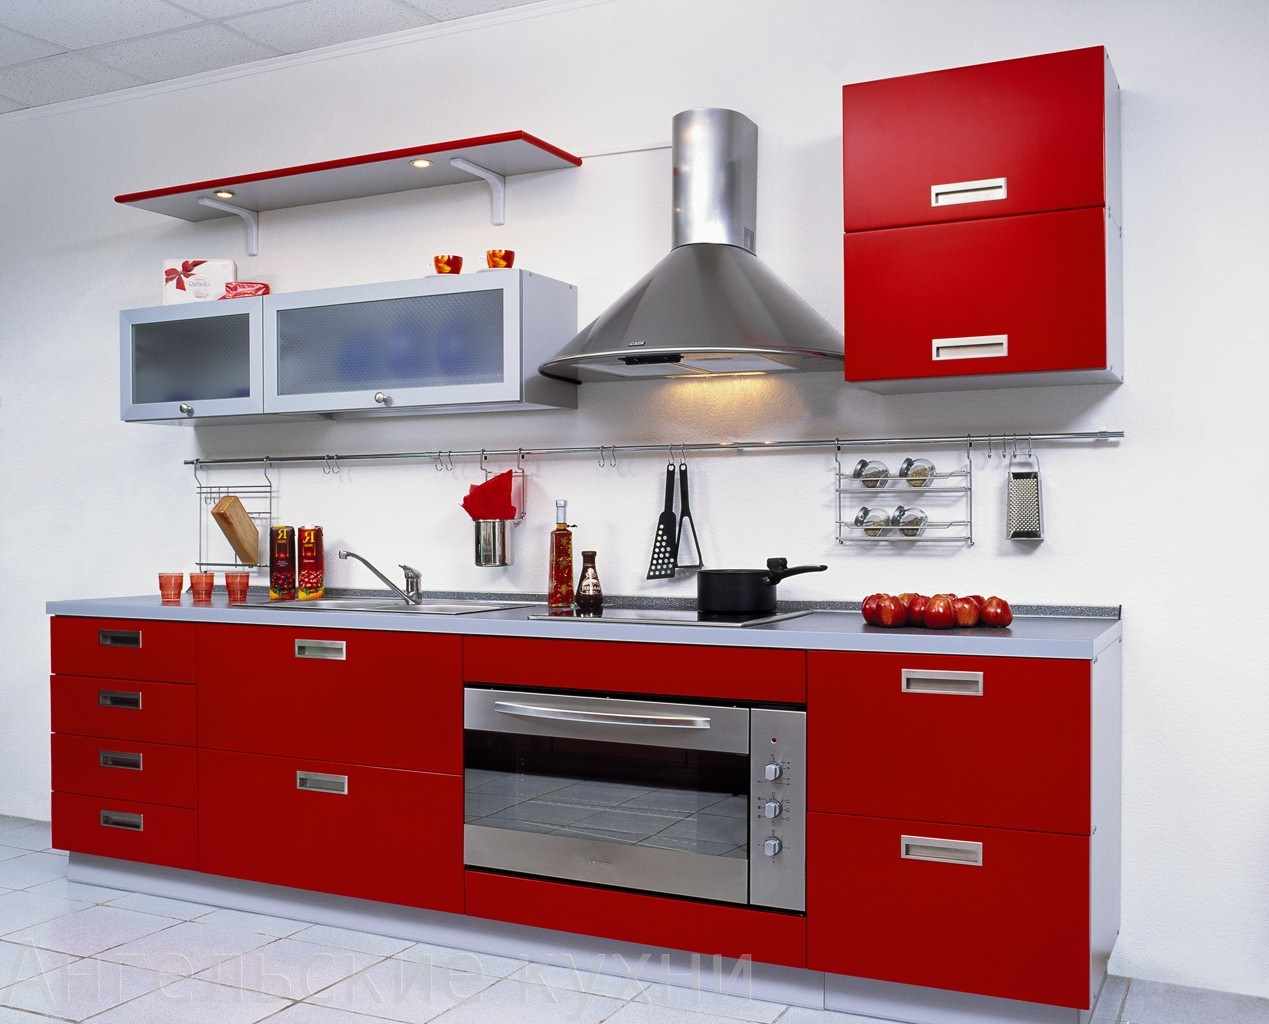 sarkanās virtuves neparasta dizaina piemērs